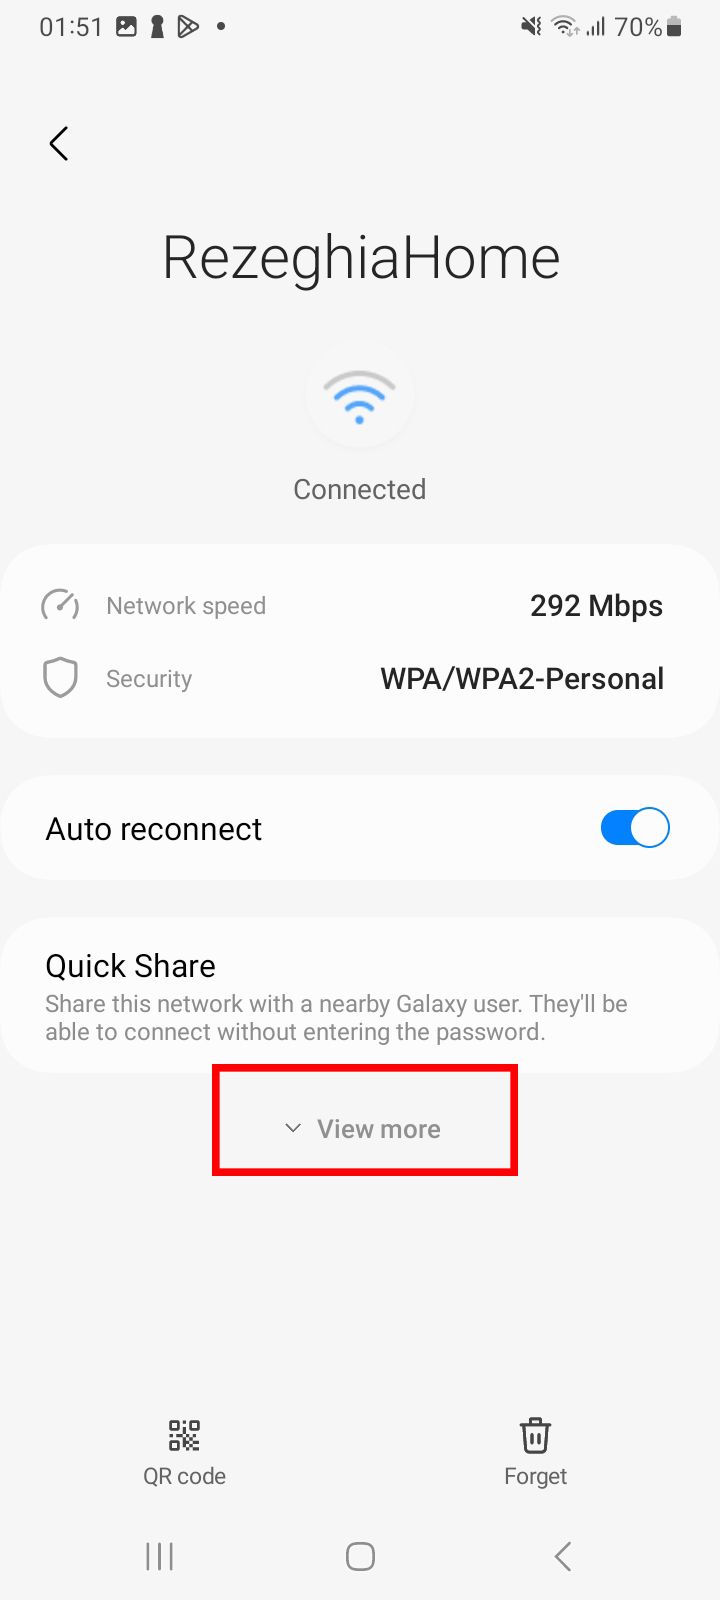 Configurações detalhadas de Wi-Fi para ‘RezeghiaHome’ em um telefone Samsung, com opções de velocidade de rede, segurança e um botão para ‘Ver mais’.